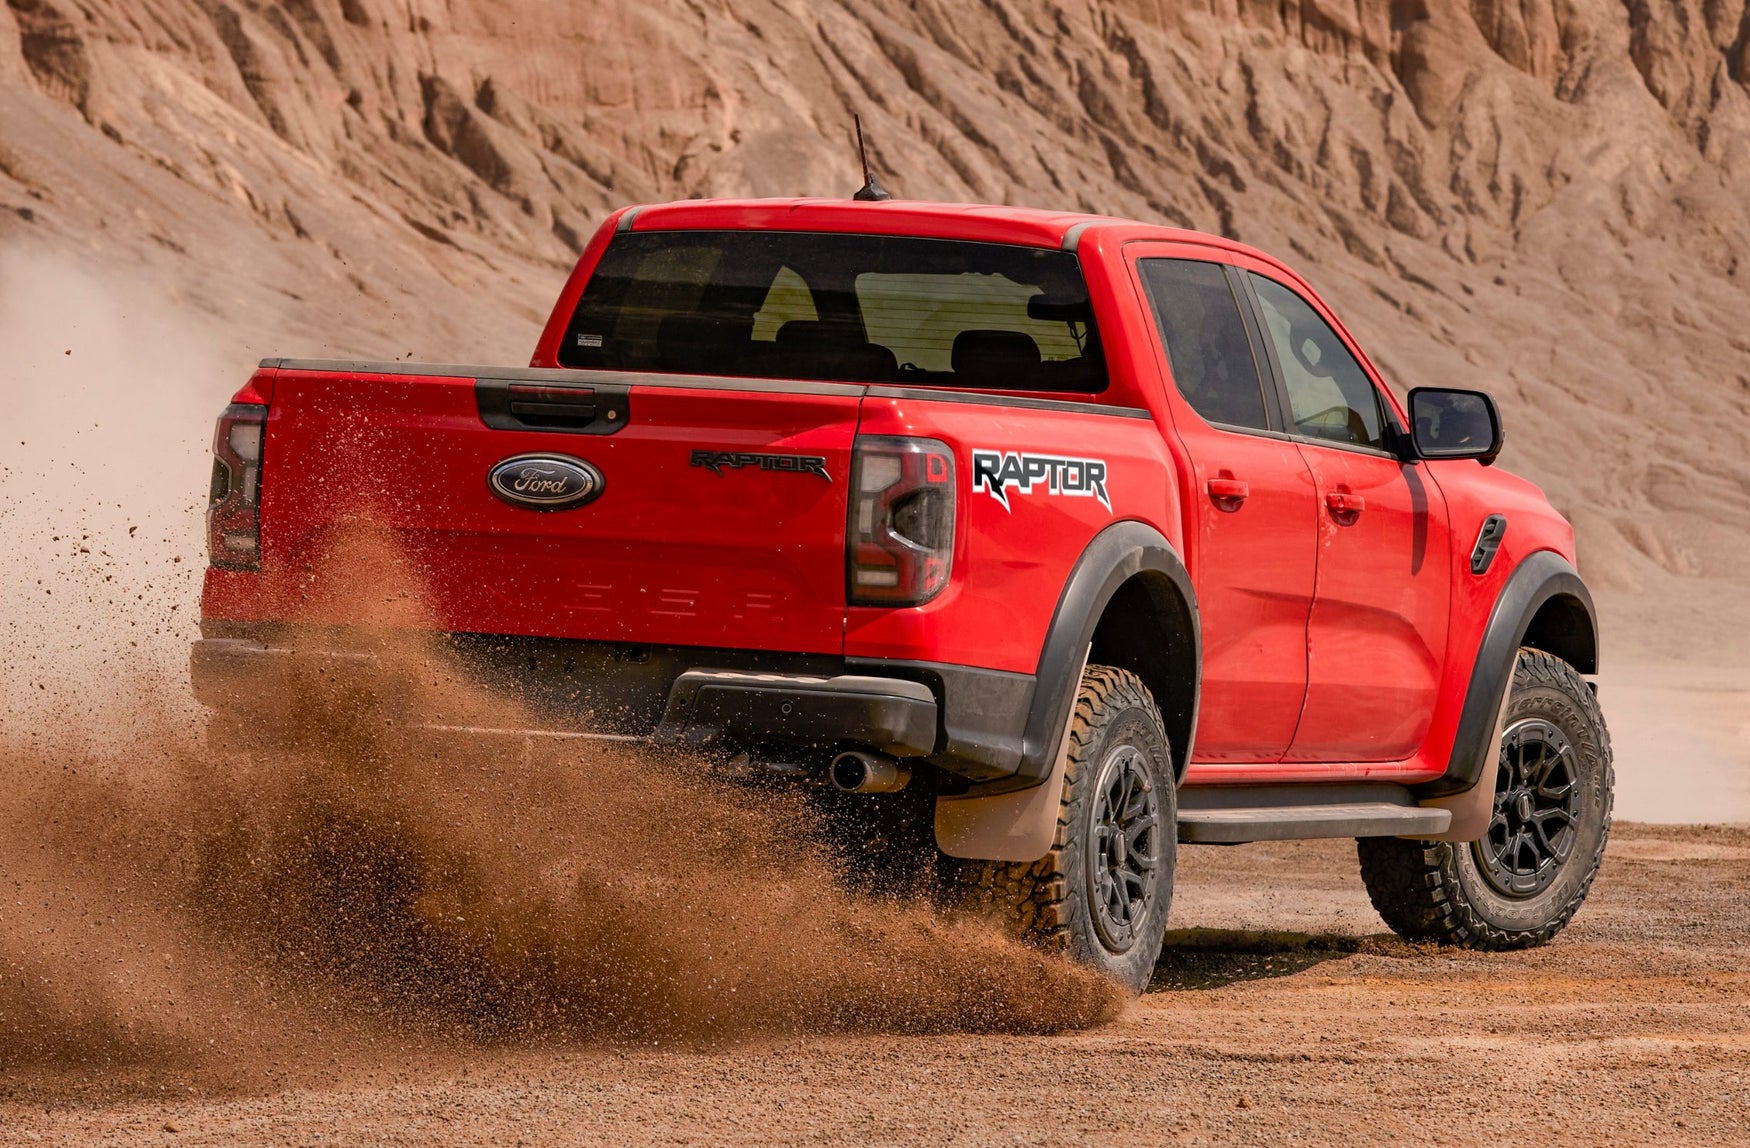 Red Ford Ranger Raptor sliding in the desert